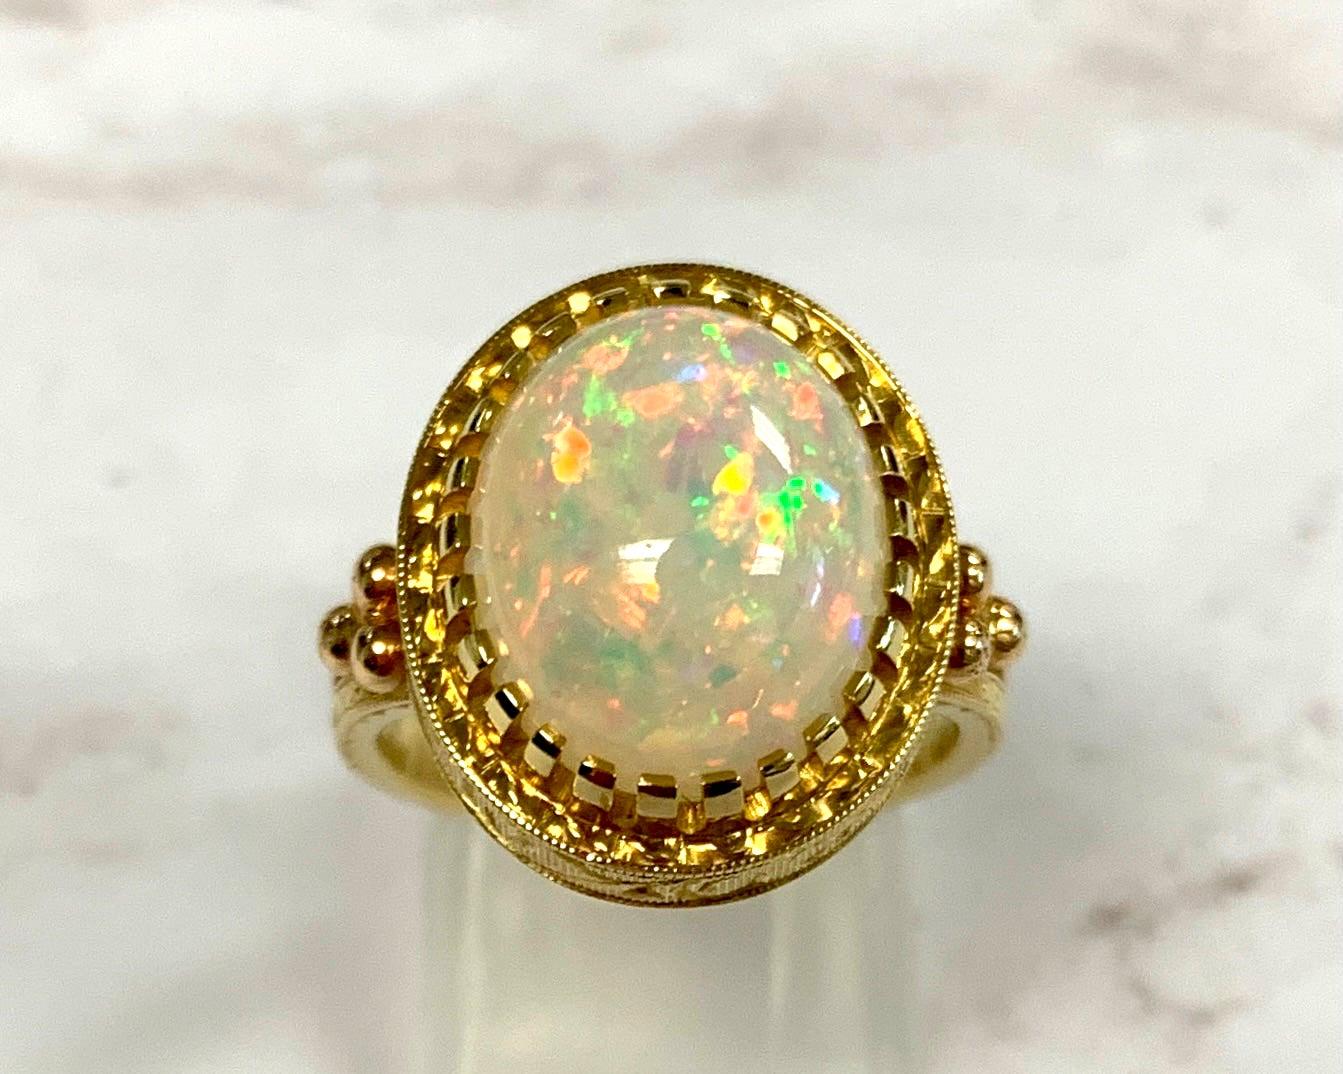 Der 4,30 Karat schwere Opal in diesem handgefertigten Ring aus 18 Karat Gelbgold strotzt nur so vor Farbe! Dieser Edelstein zeigt leuchtendes Grün, Orange, Gelb und die am meisten geschätzte und seltene Farbe: Rot! Es ist schwierig, diesem Opal mit